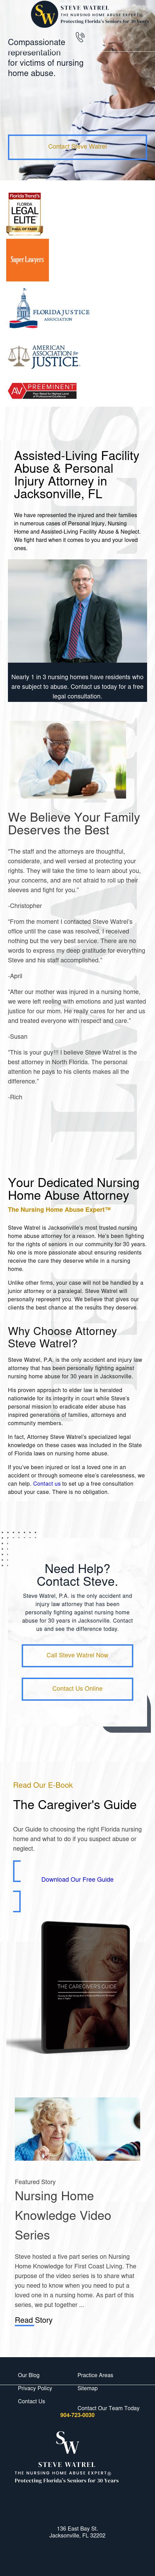 Steve Watrel, P.A. - Jacksonville FL Lawyers